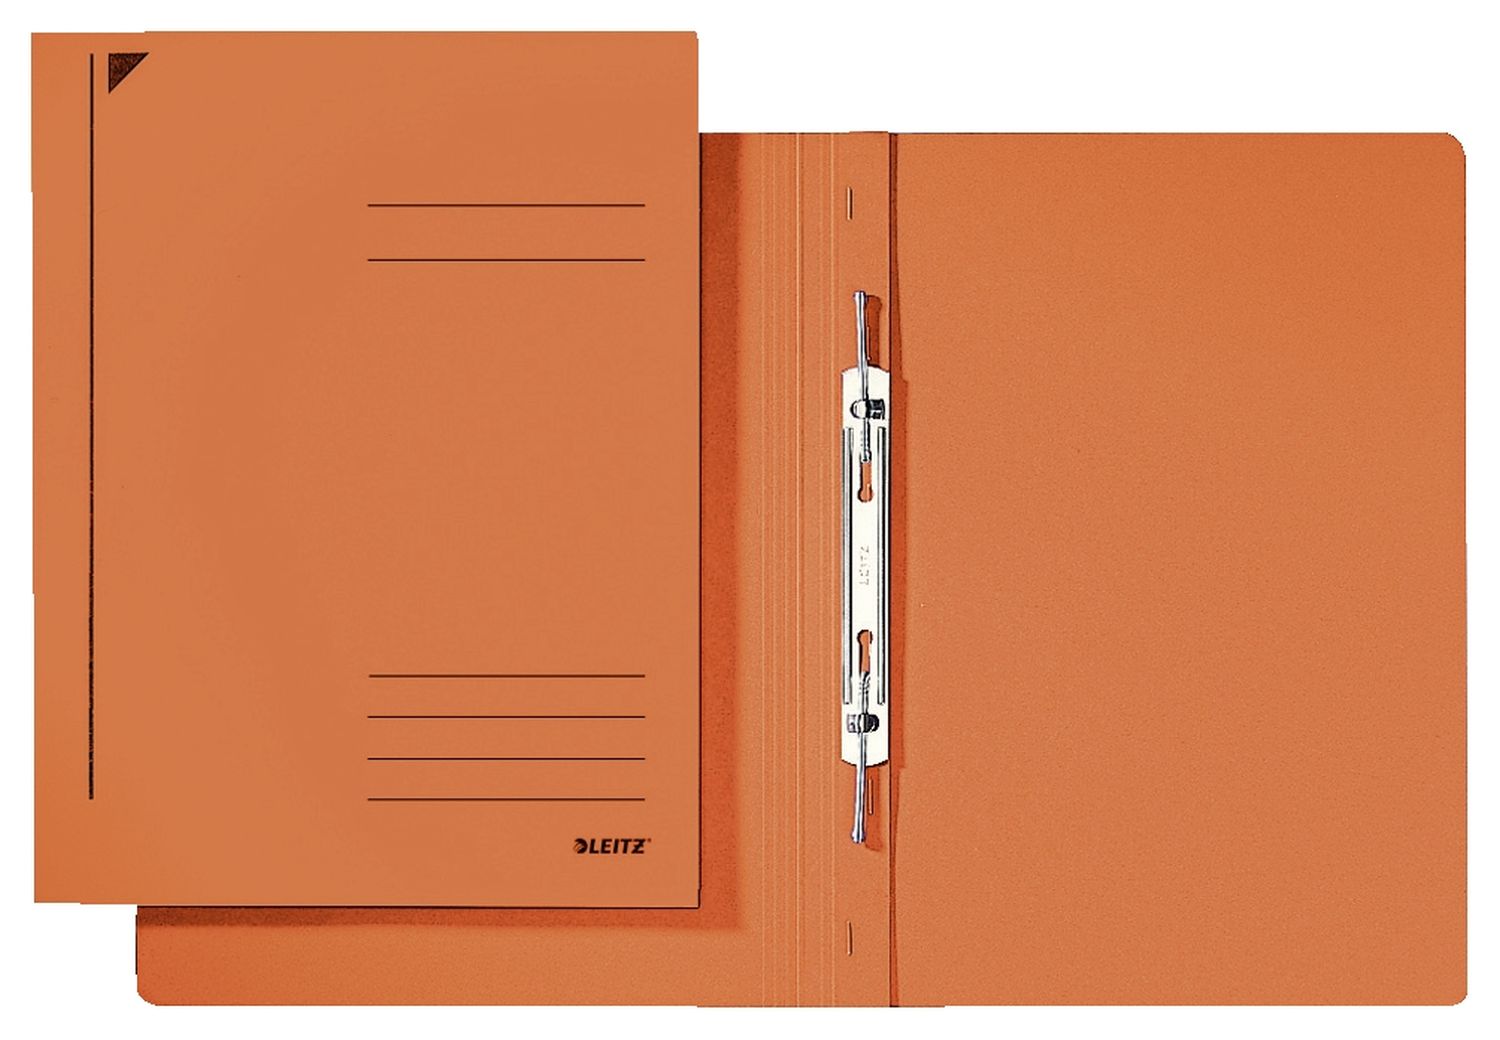 3040 Spiralhefter - A4, 250 Blatt, kfm. Heftung, Recycling-Karton, orange